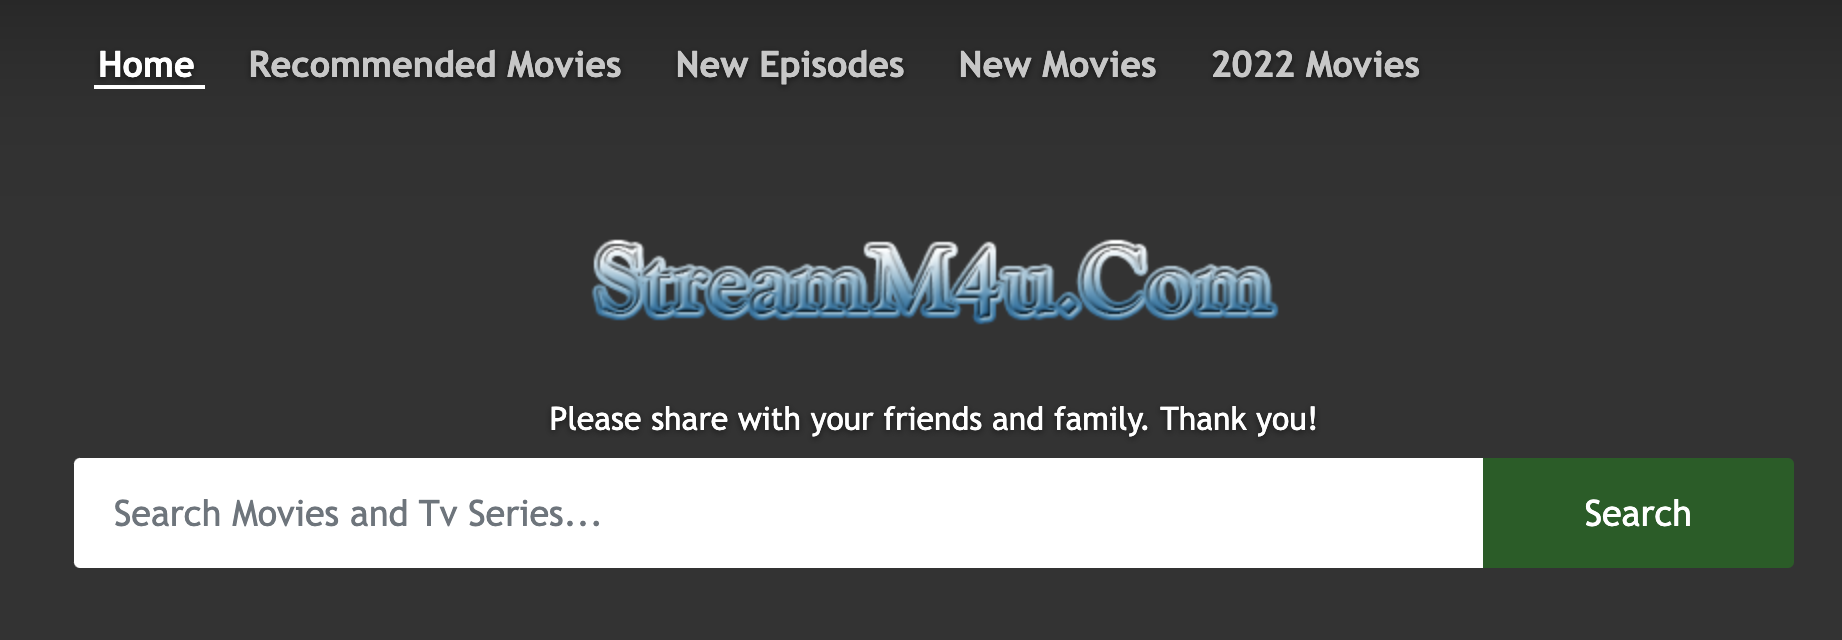 streamM4U - siti di streaming di film online gratuiti